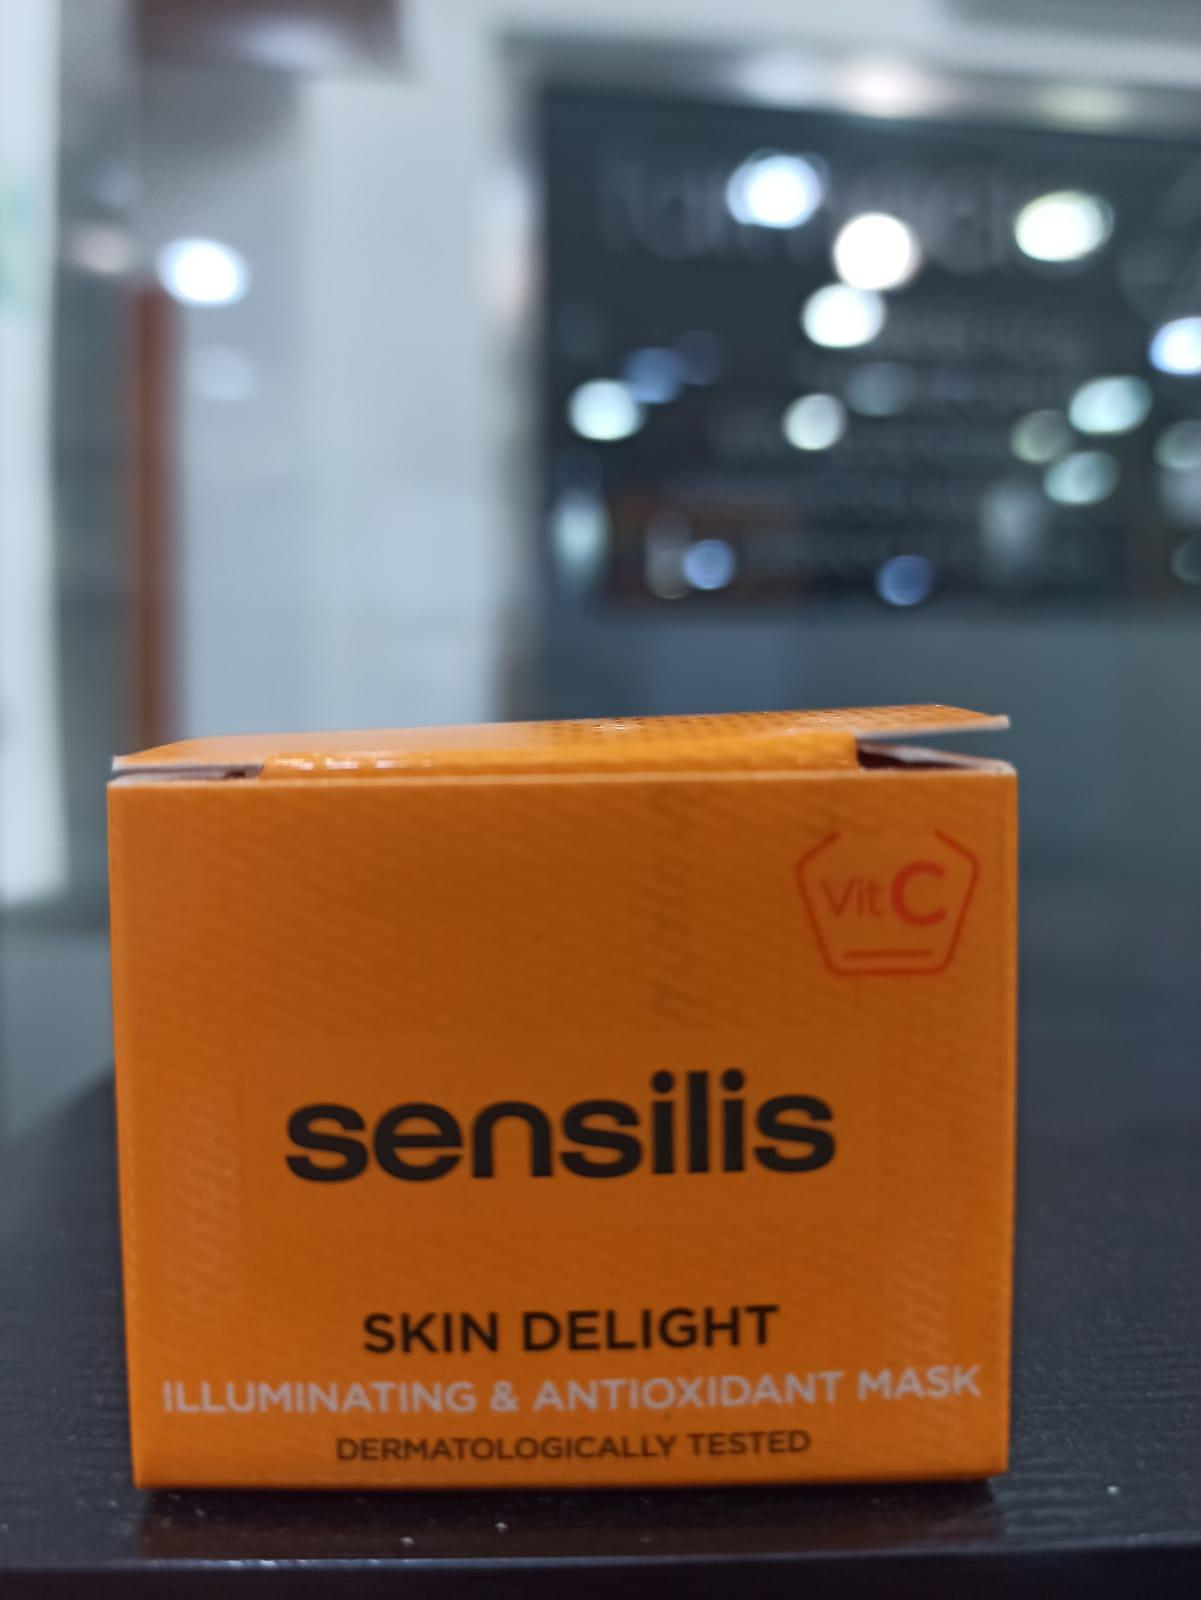  Sensilis Skin Deligth mascarilla REGALO POR LA COMPRA DE 1 PRODUCTO SENSILIS